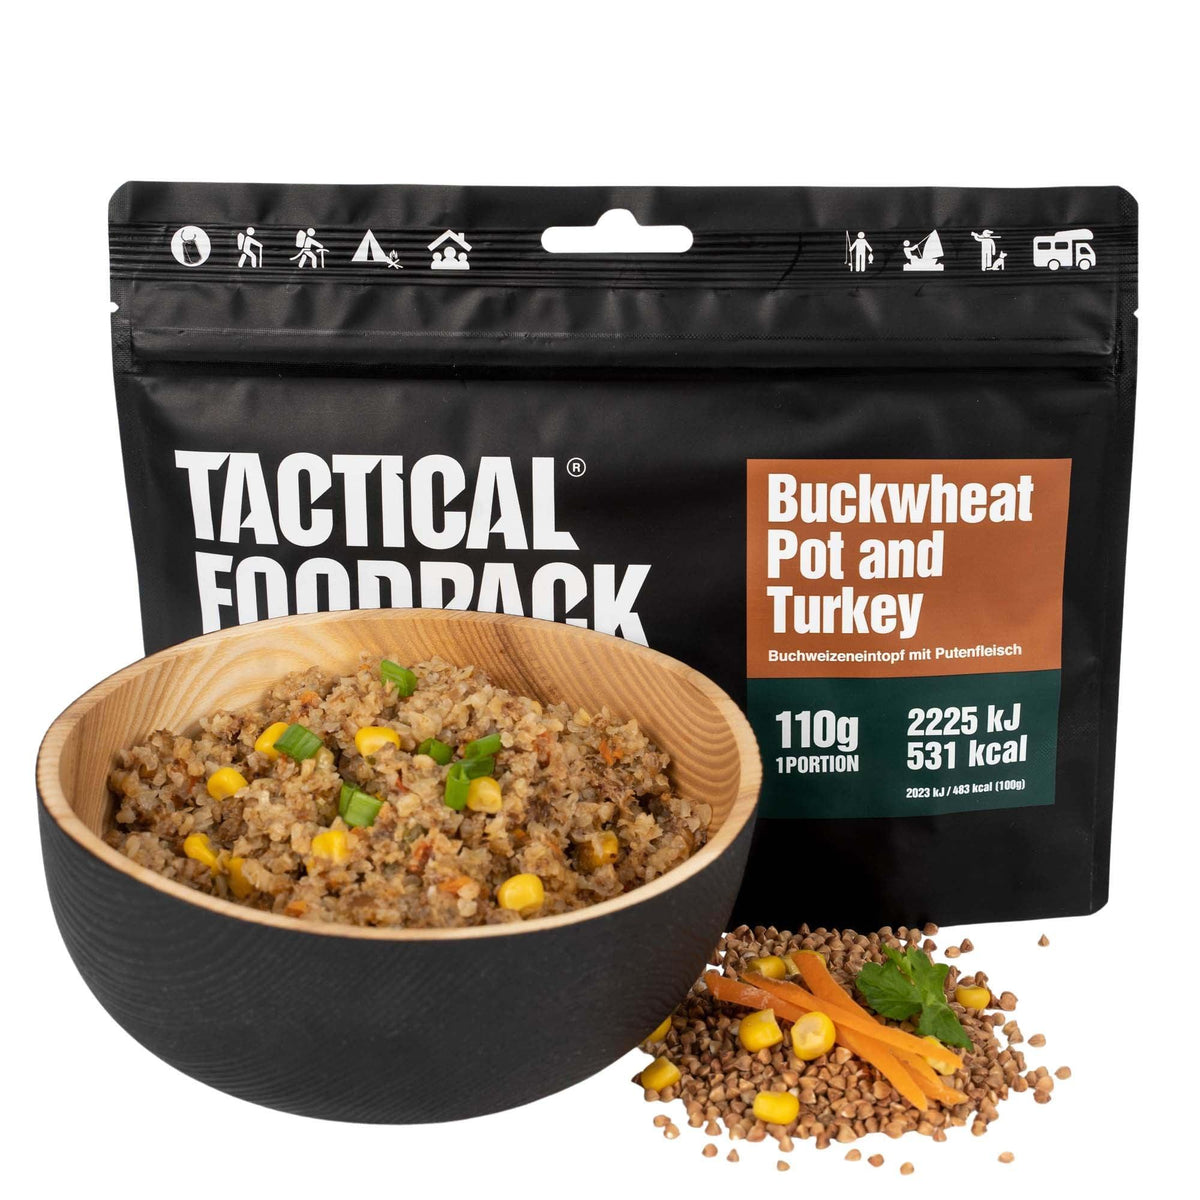 Tactical Foodpack Outdoornahrung | Buchweizeneintopf Mit Putenfleisch